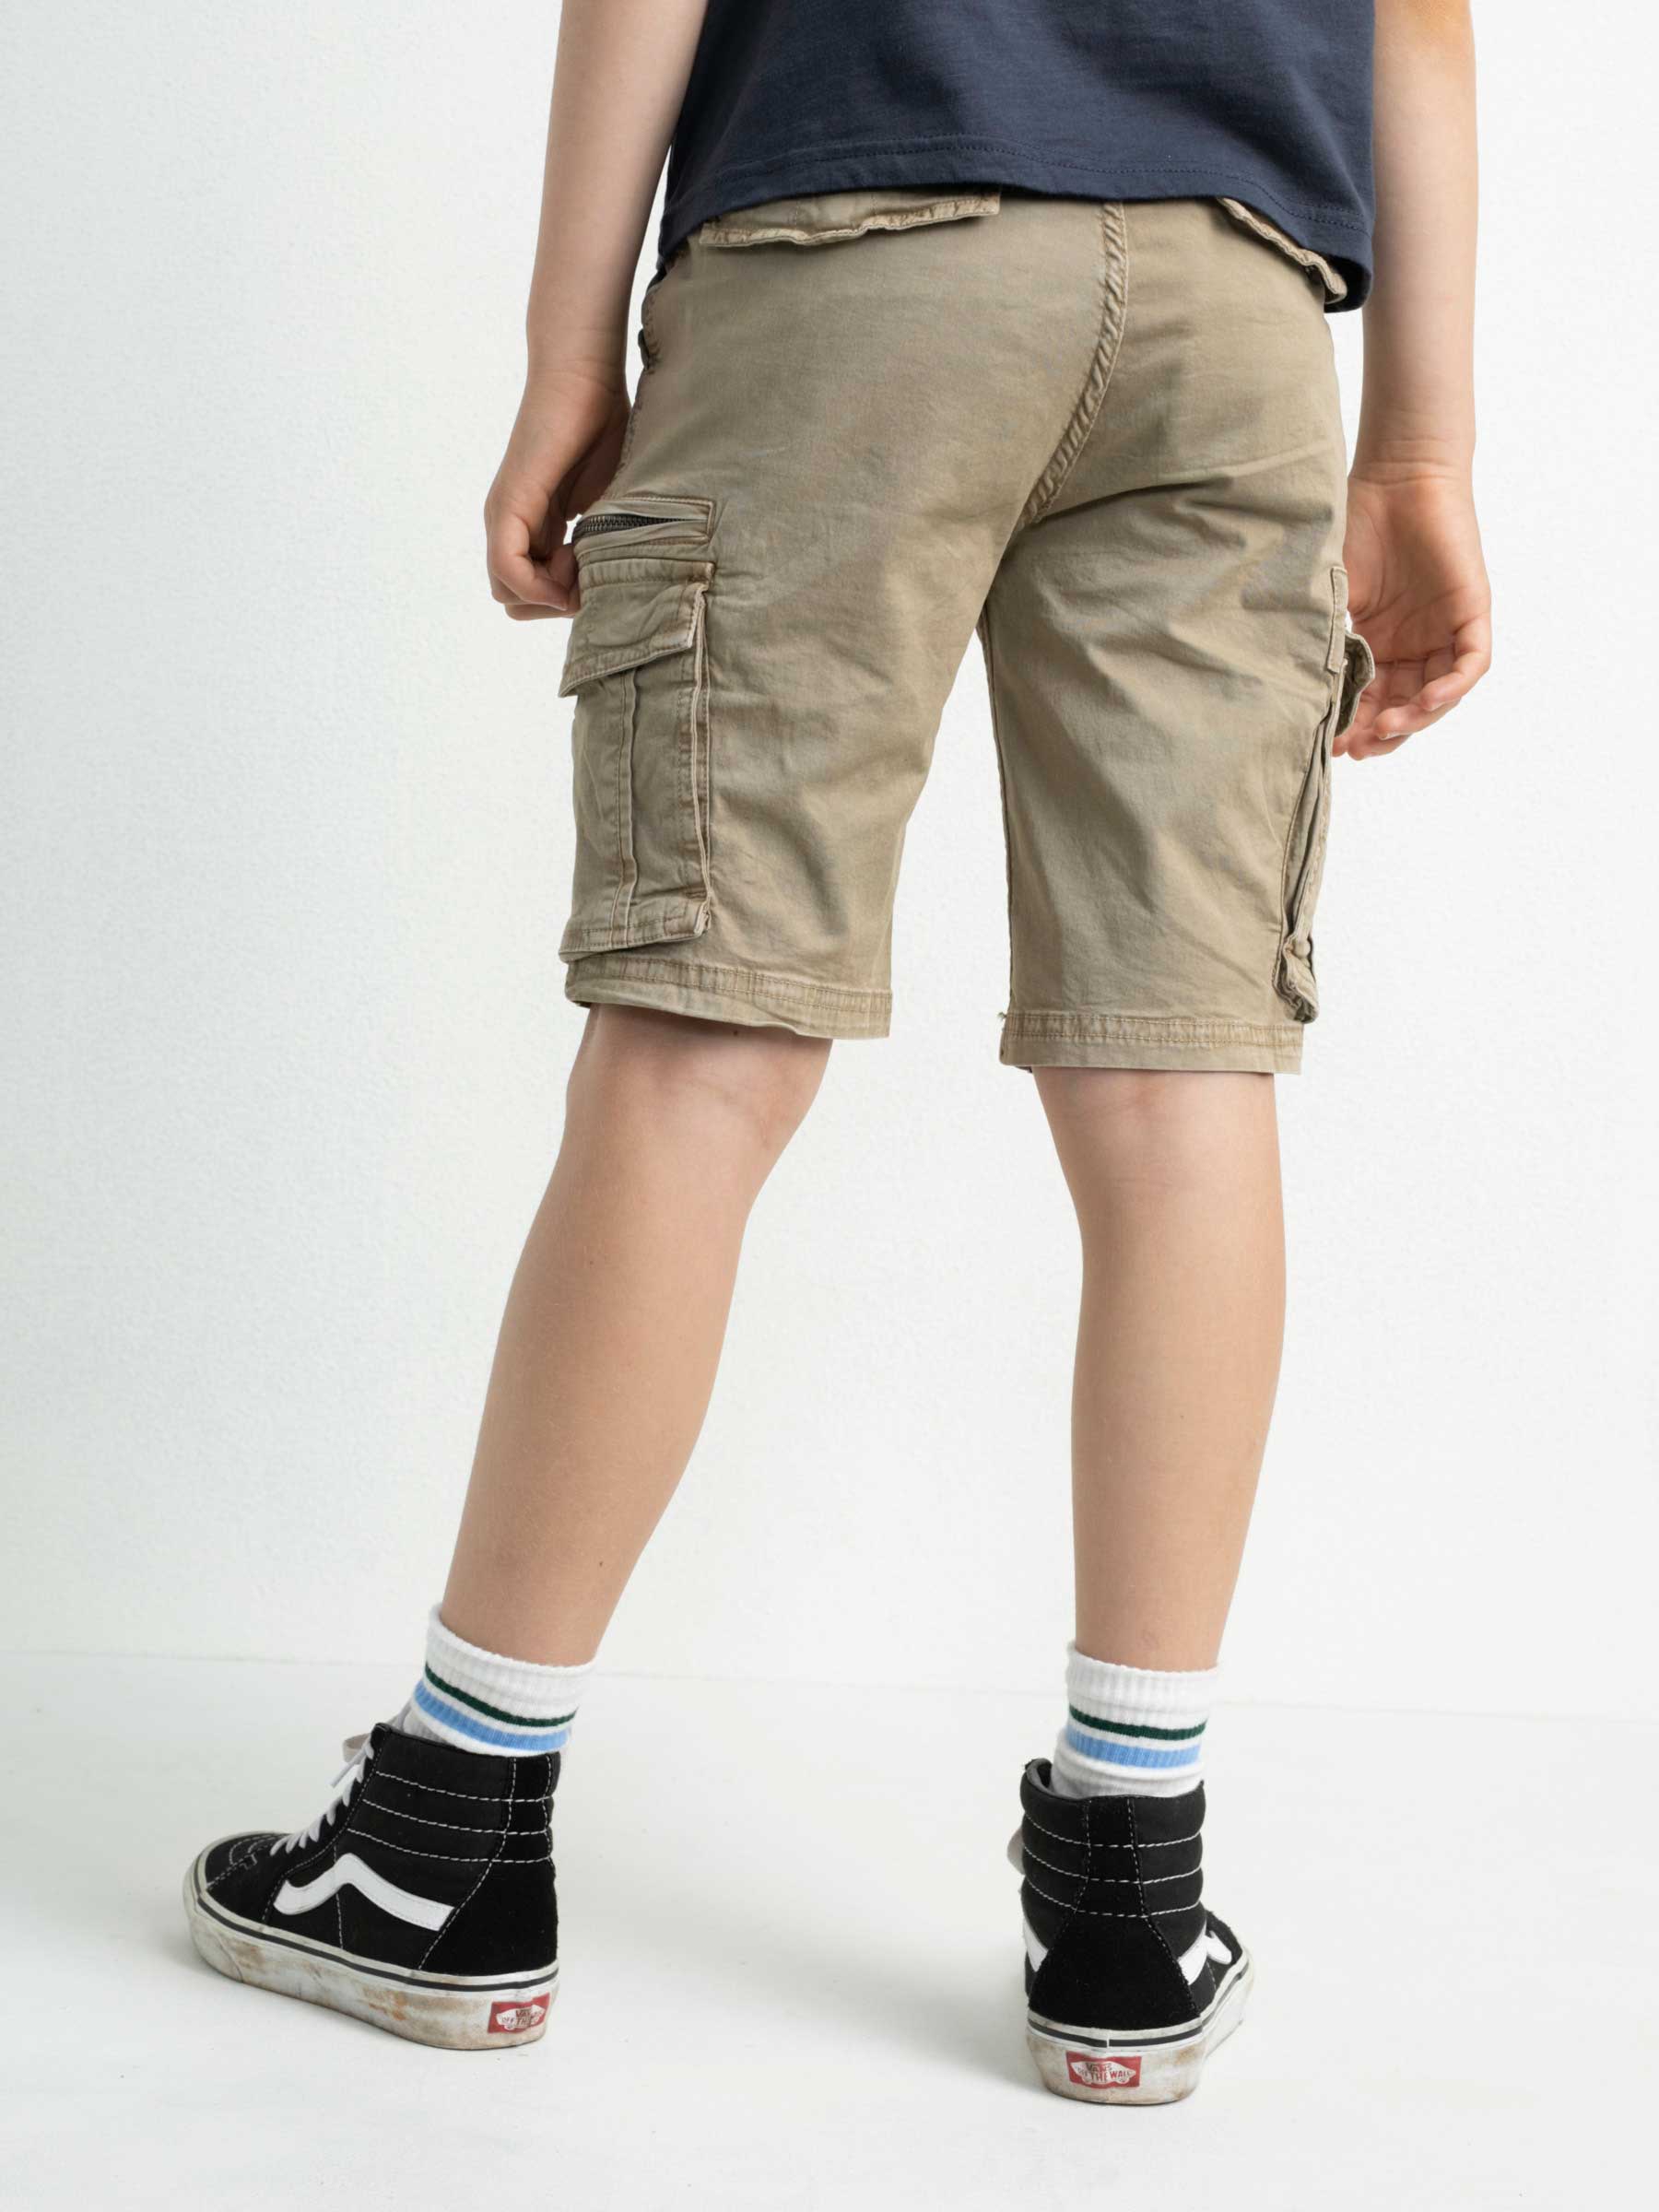 Pantalón corto chándal básico niño 611 Cemento vig - Koko's Peques